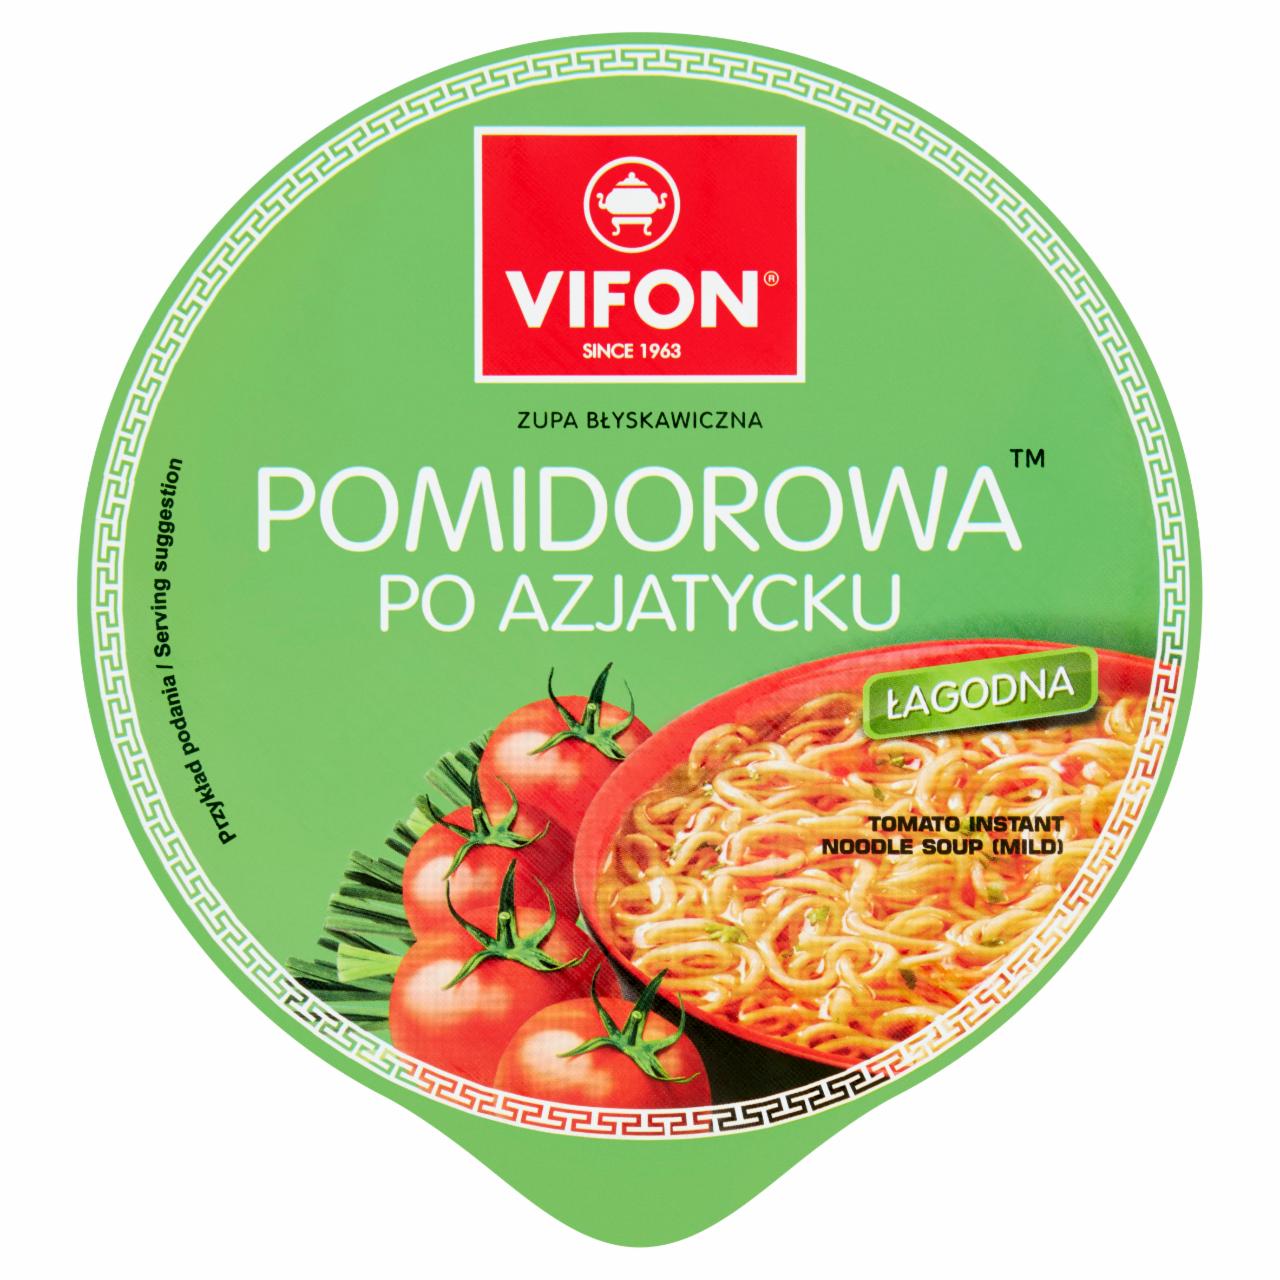 Zdjęcia - Zupa błyskawiczna pomidorowa po azjatycku Vifon